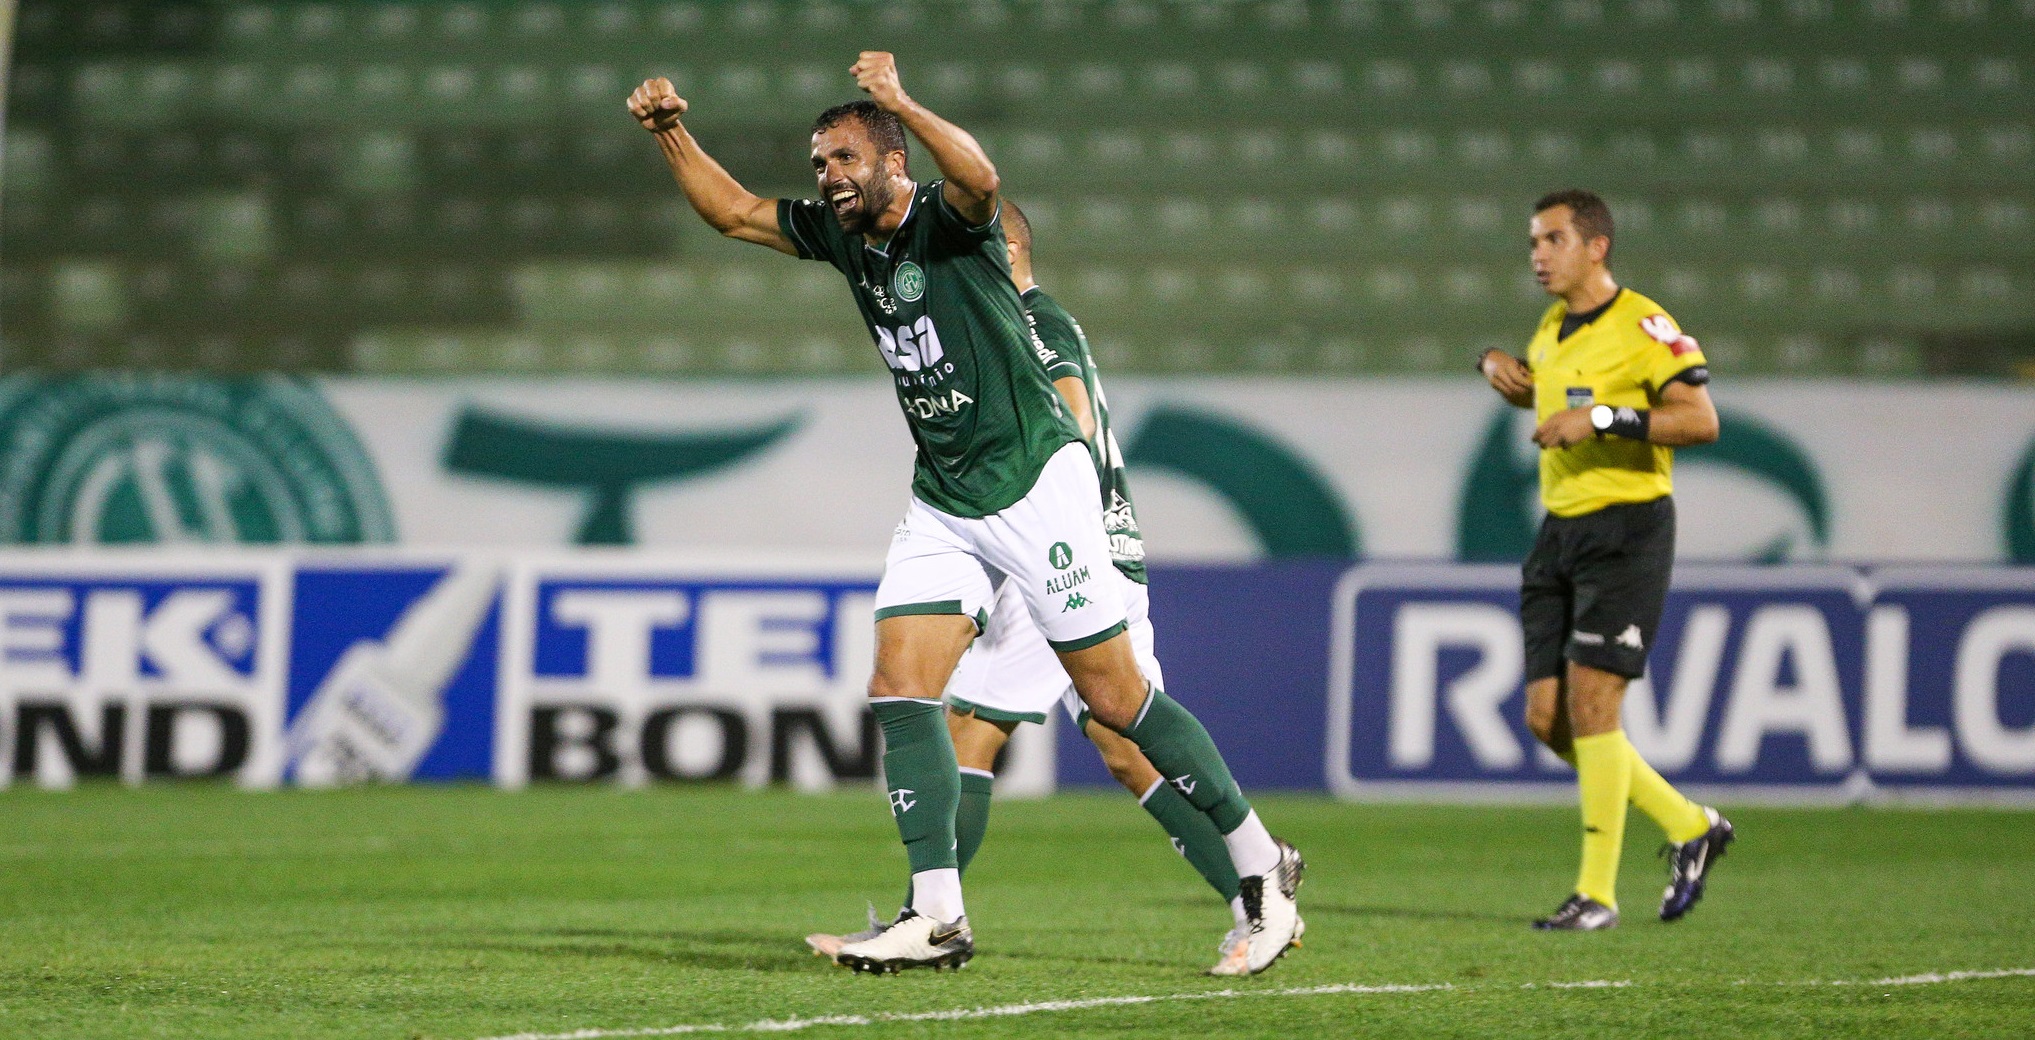 Herói de vitória, Ronaldo Alves faz primeiro gol e se consolida no Guarani